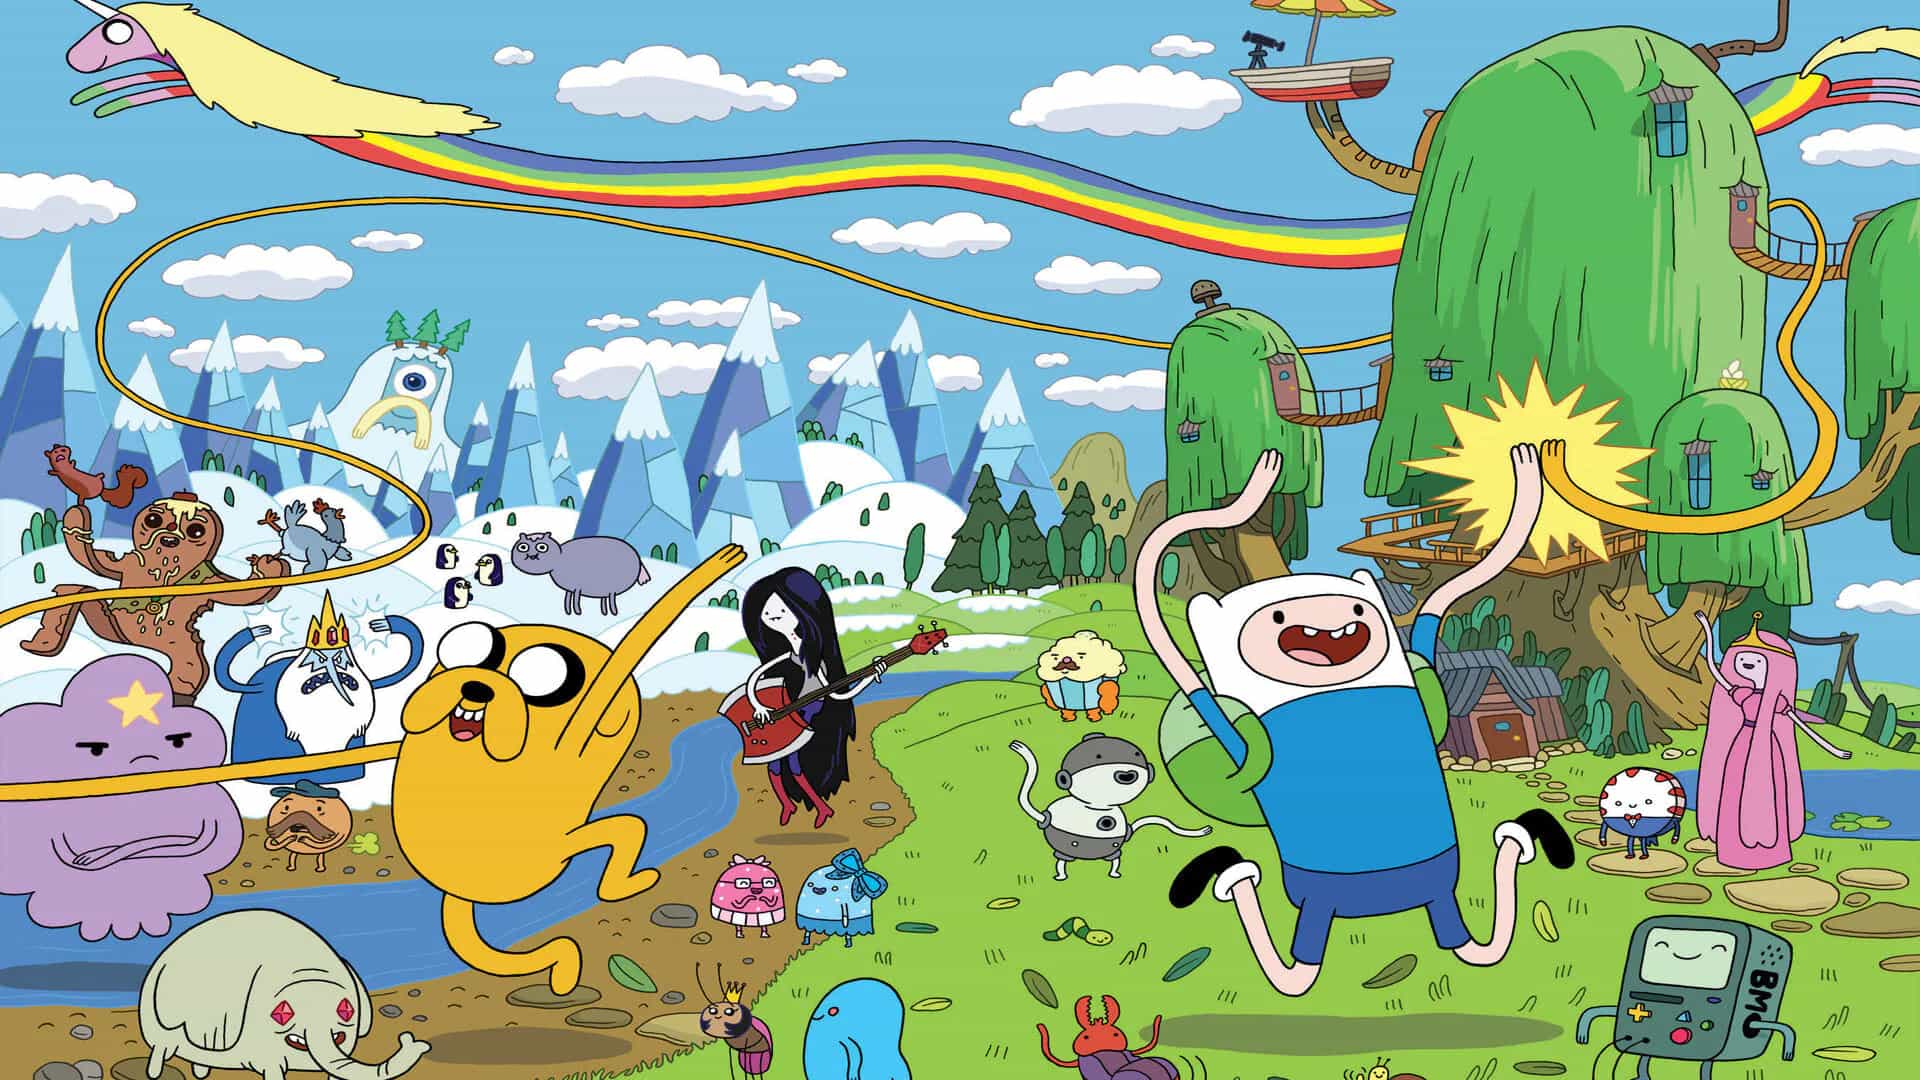 Jake el perro y Finn el humano rodeados de sus amigos en la hilarante serie de animación Hora de aventuras